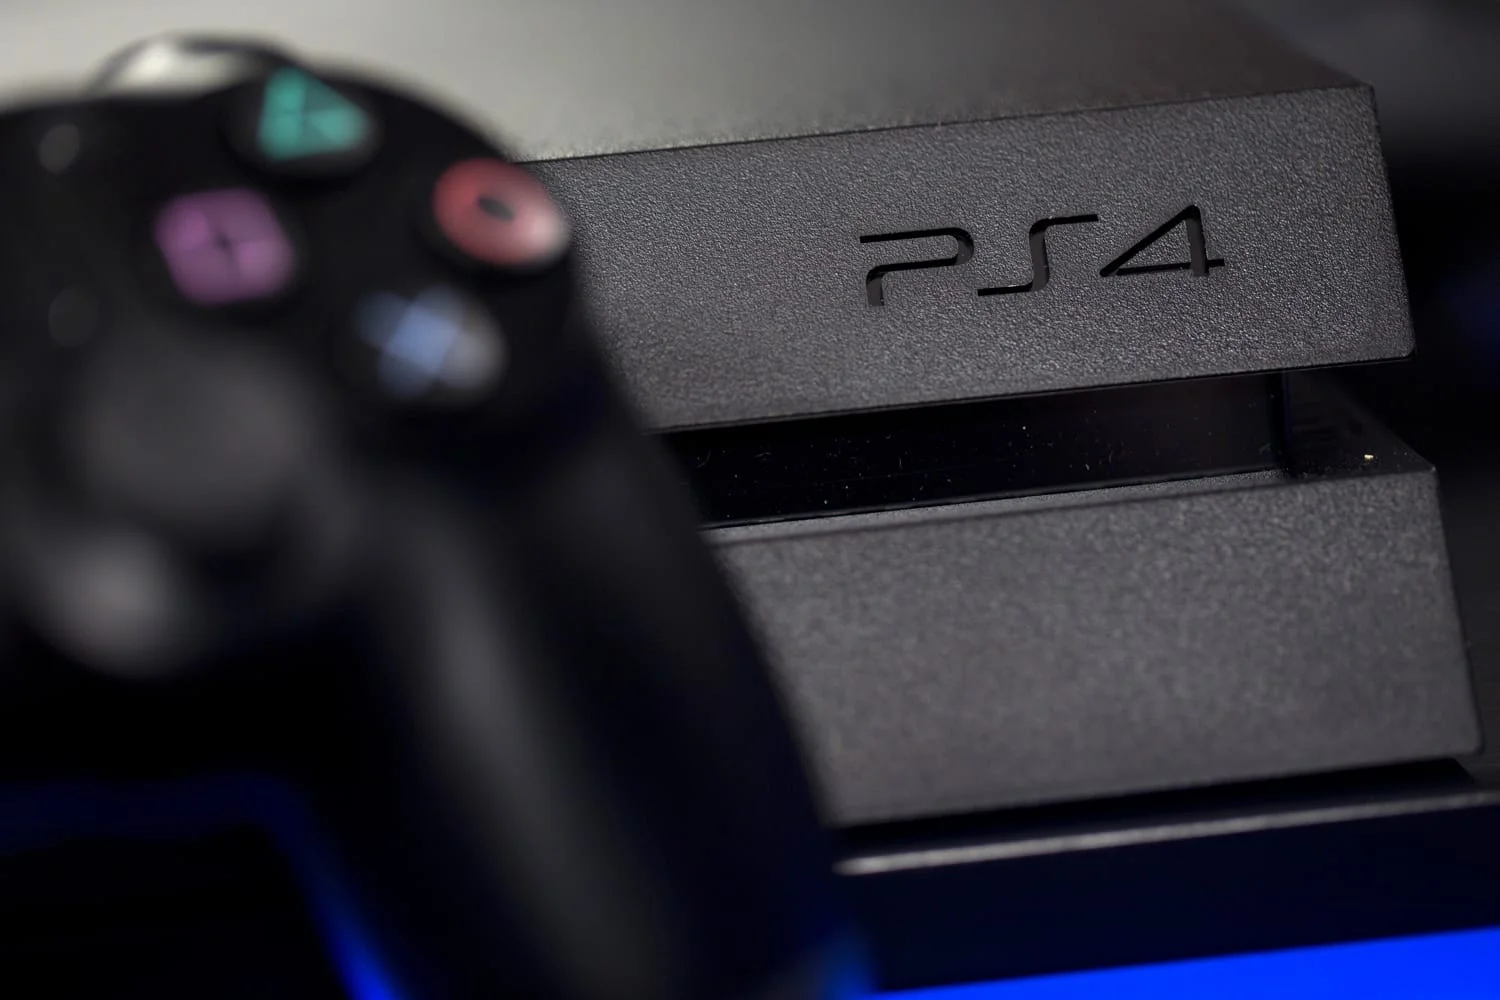 Sony платит за найденные уязвимости в PS4. Сообщить об ошибке и получить деньги может каждый - фото 1